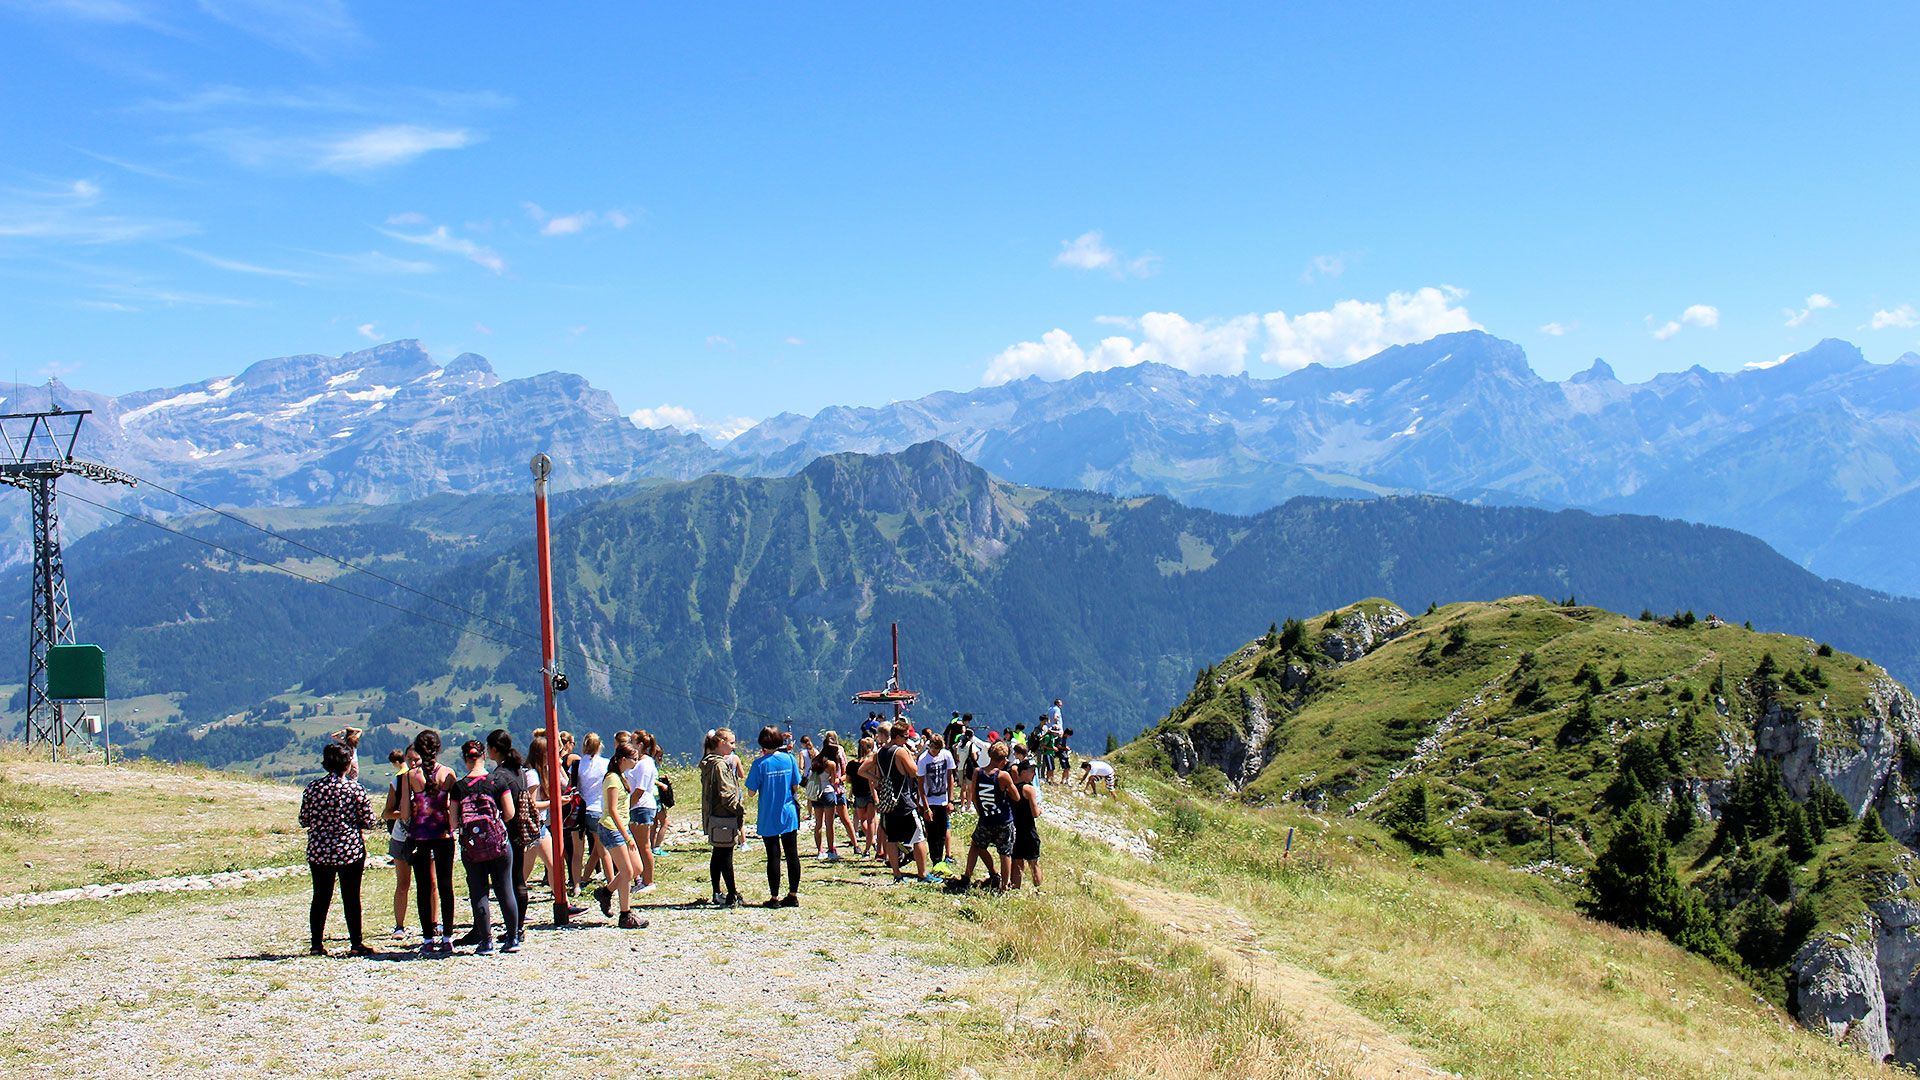  Лятна ваканция в Швейцария - спокойно и забавно